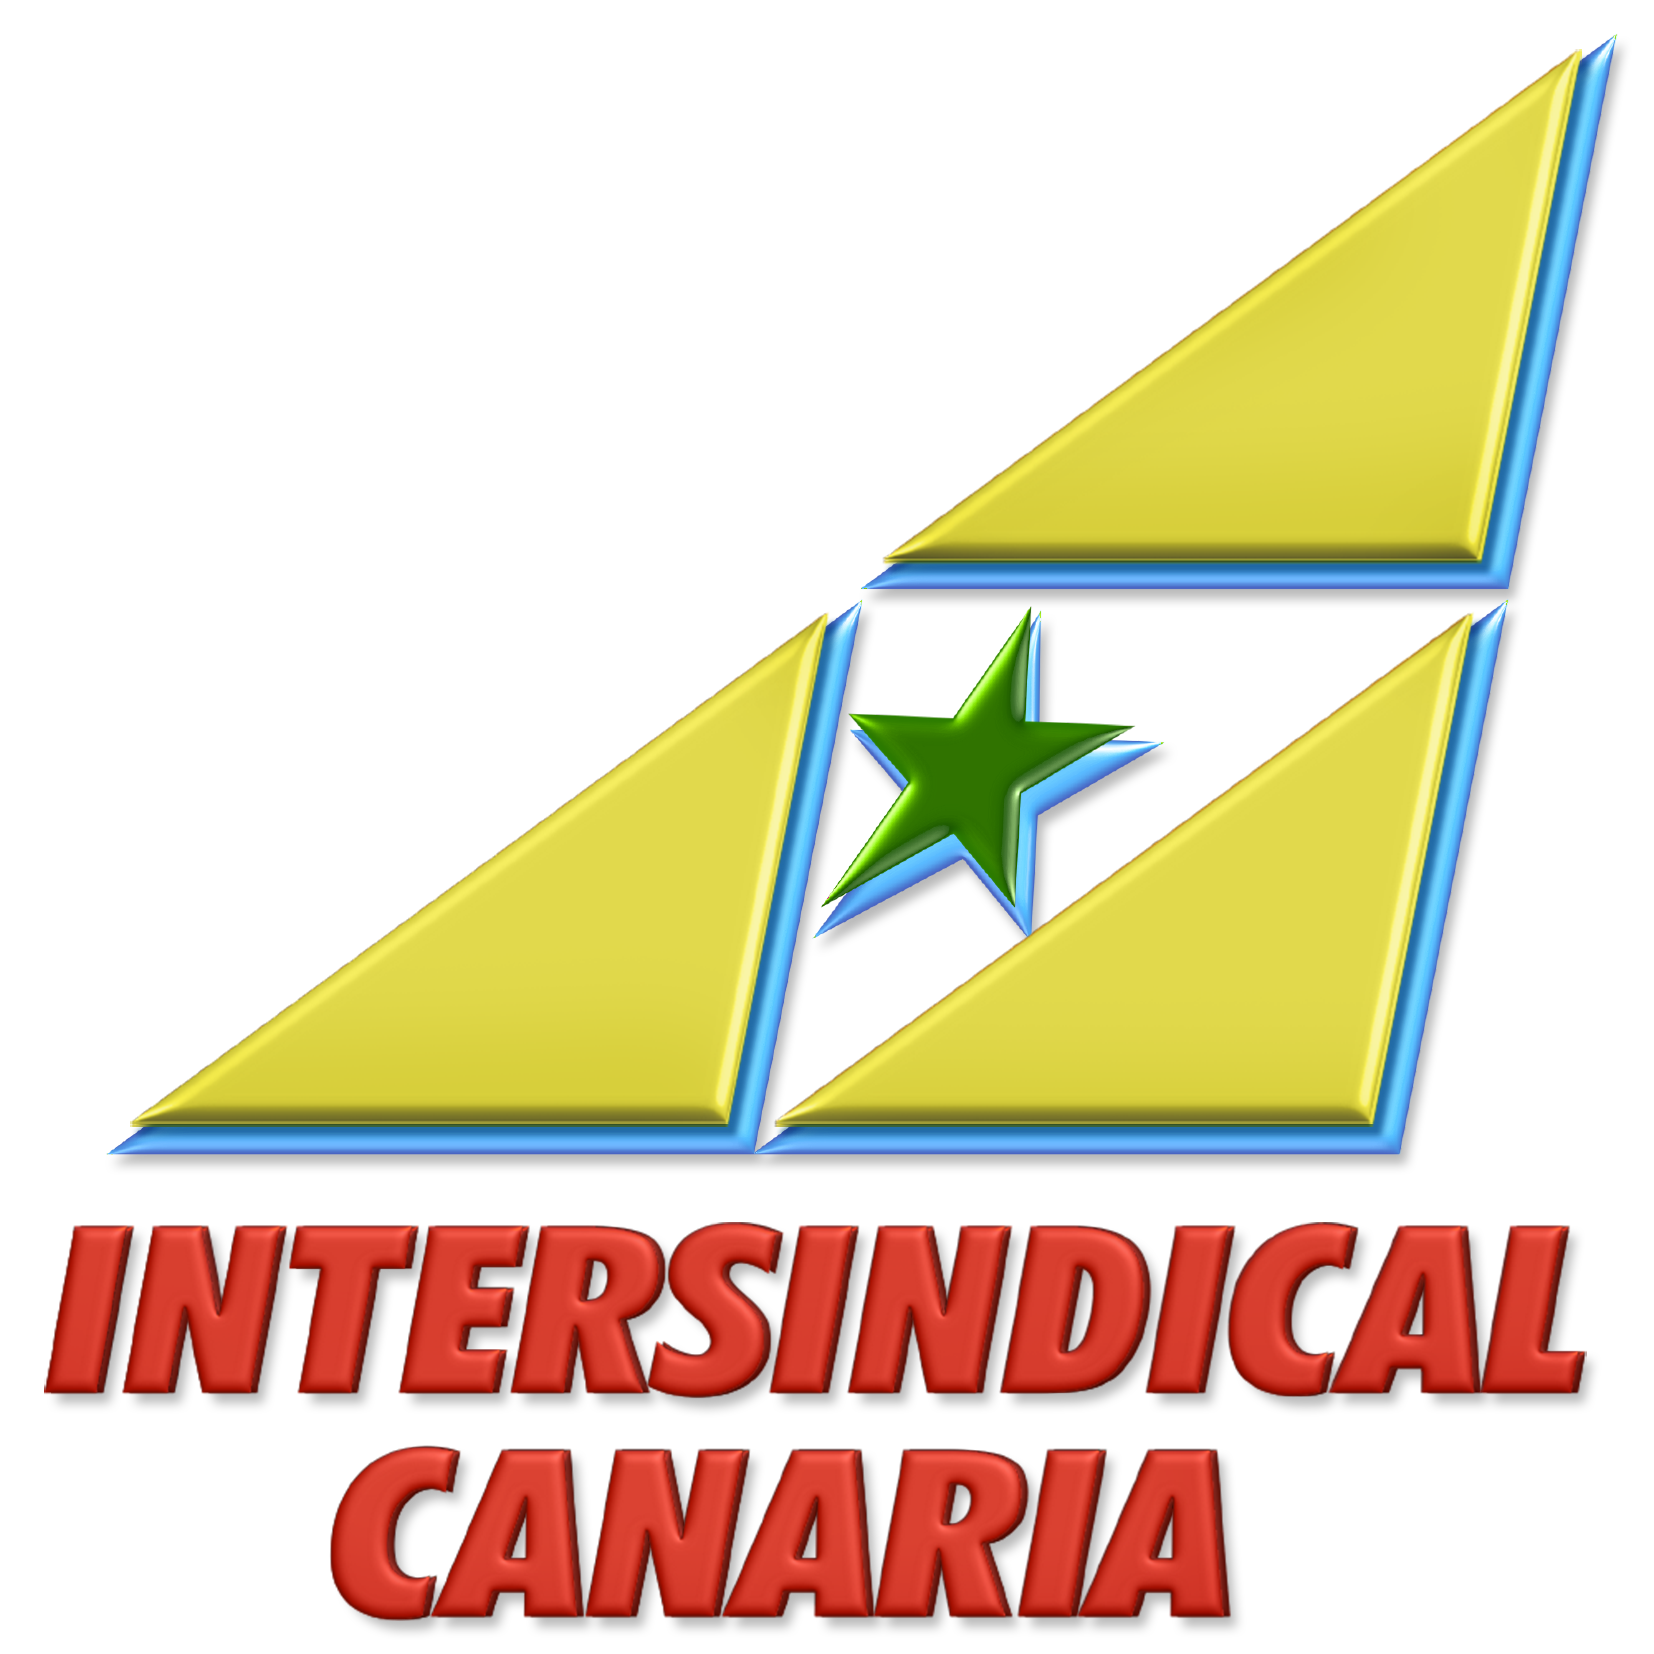 Intersindical Canarias